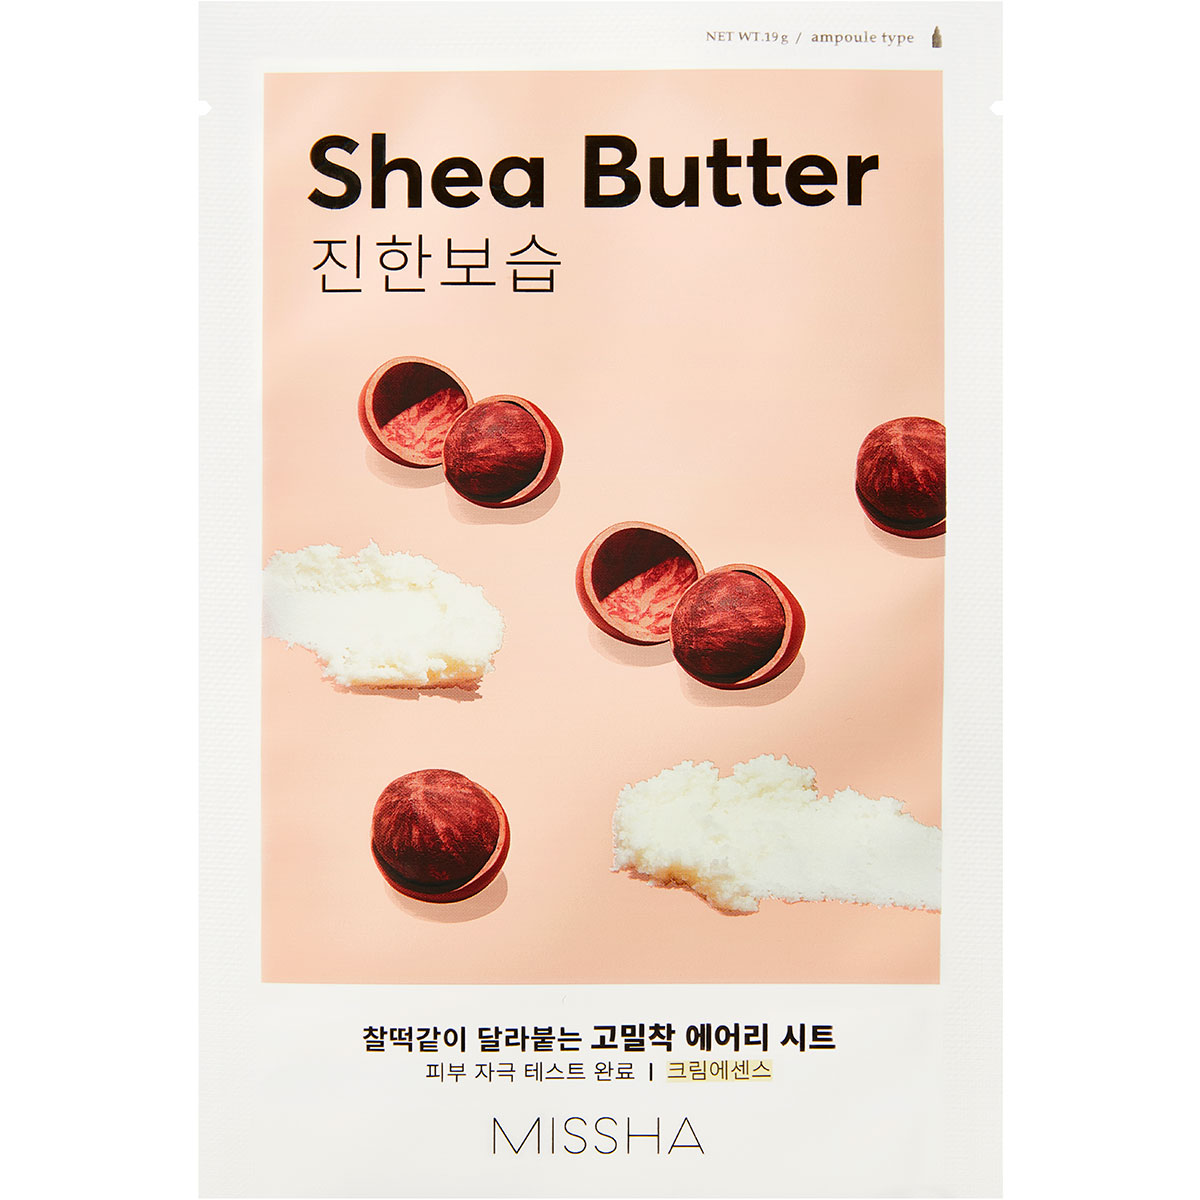 Airy Fit Sheet Mask (Shea Butter), 19 g MISSHA Body Butter